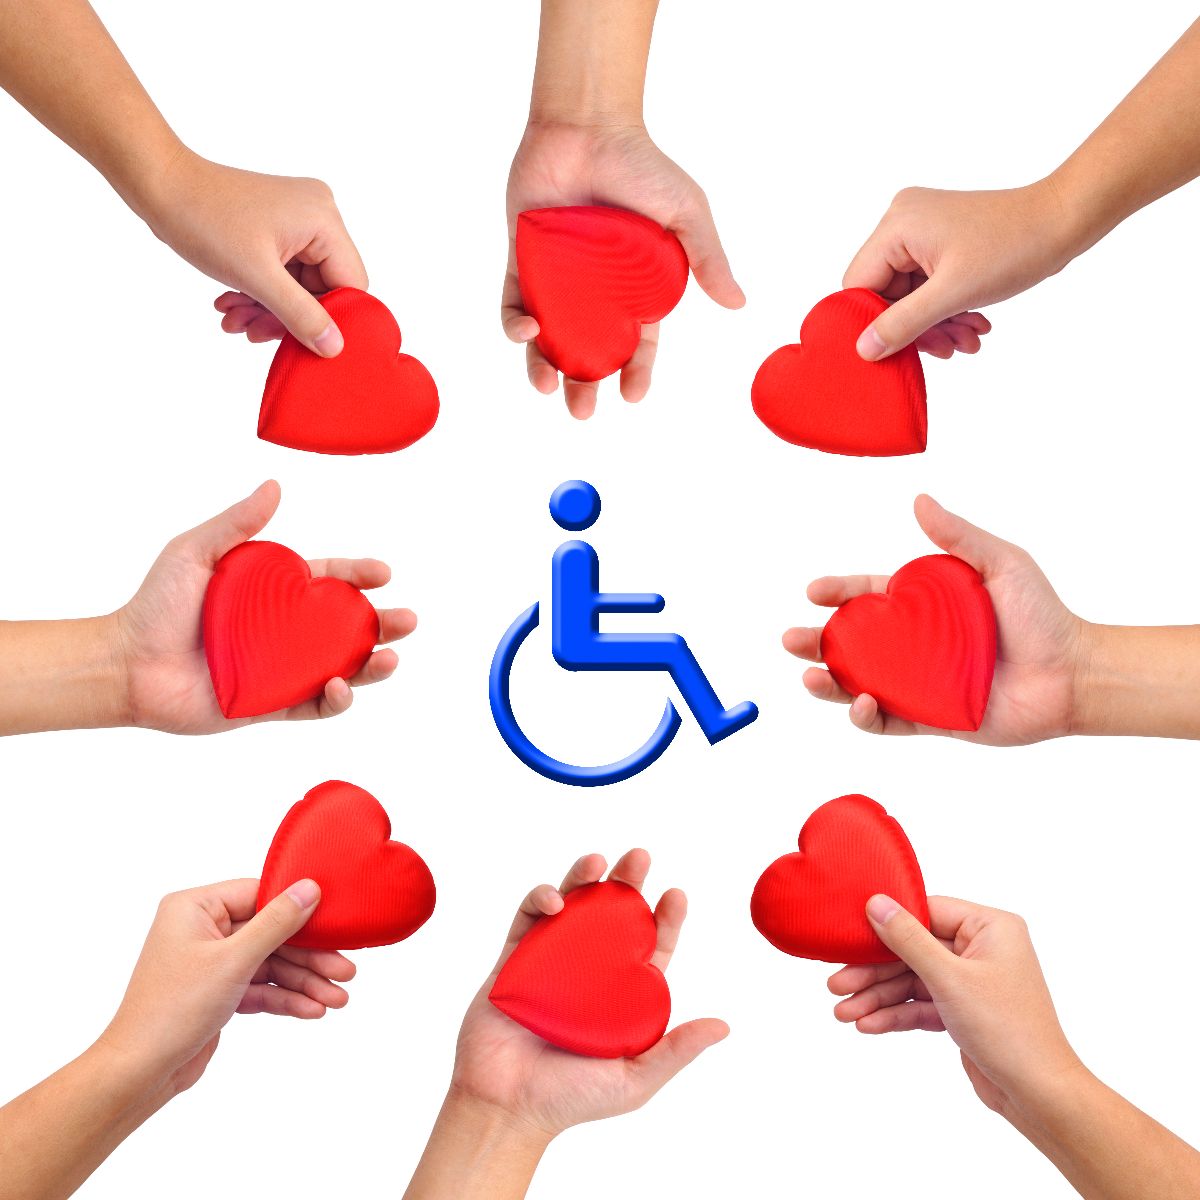 Manos con corazón alrededor de una ilustración de persona en silla de ruedas